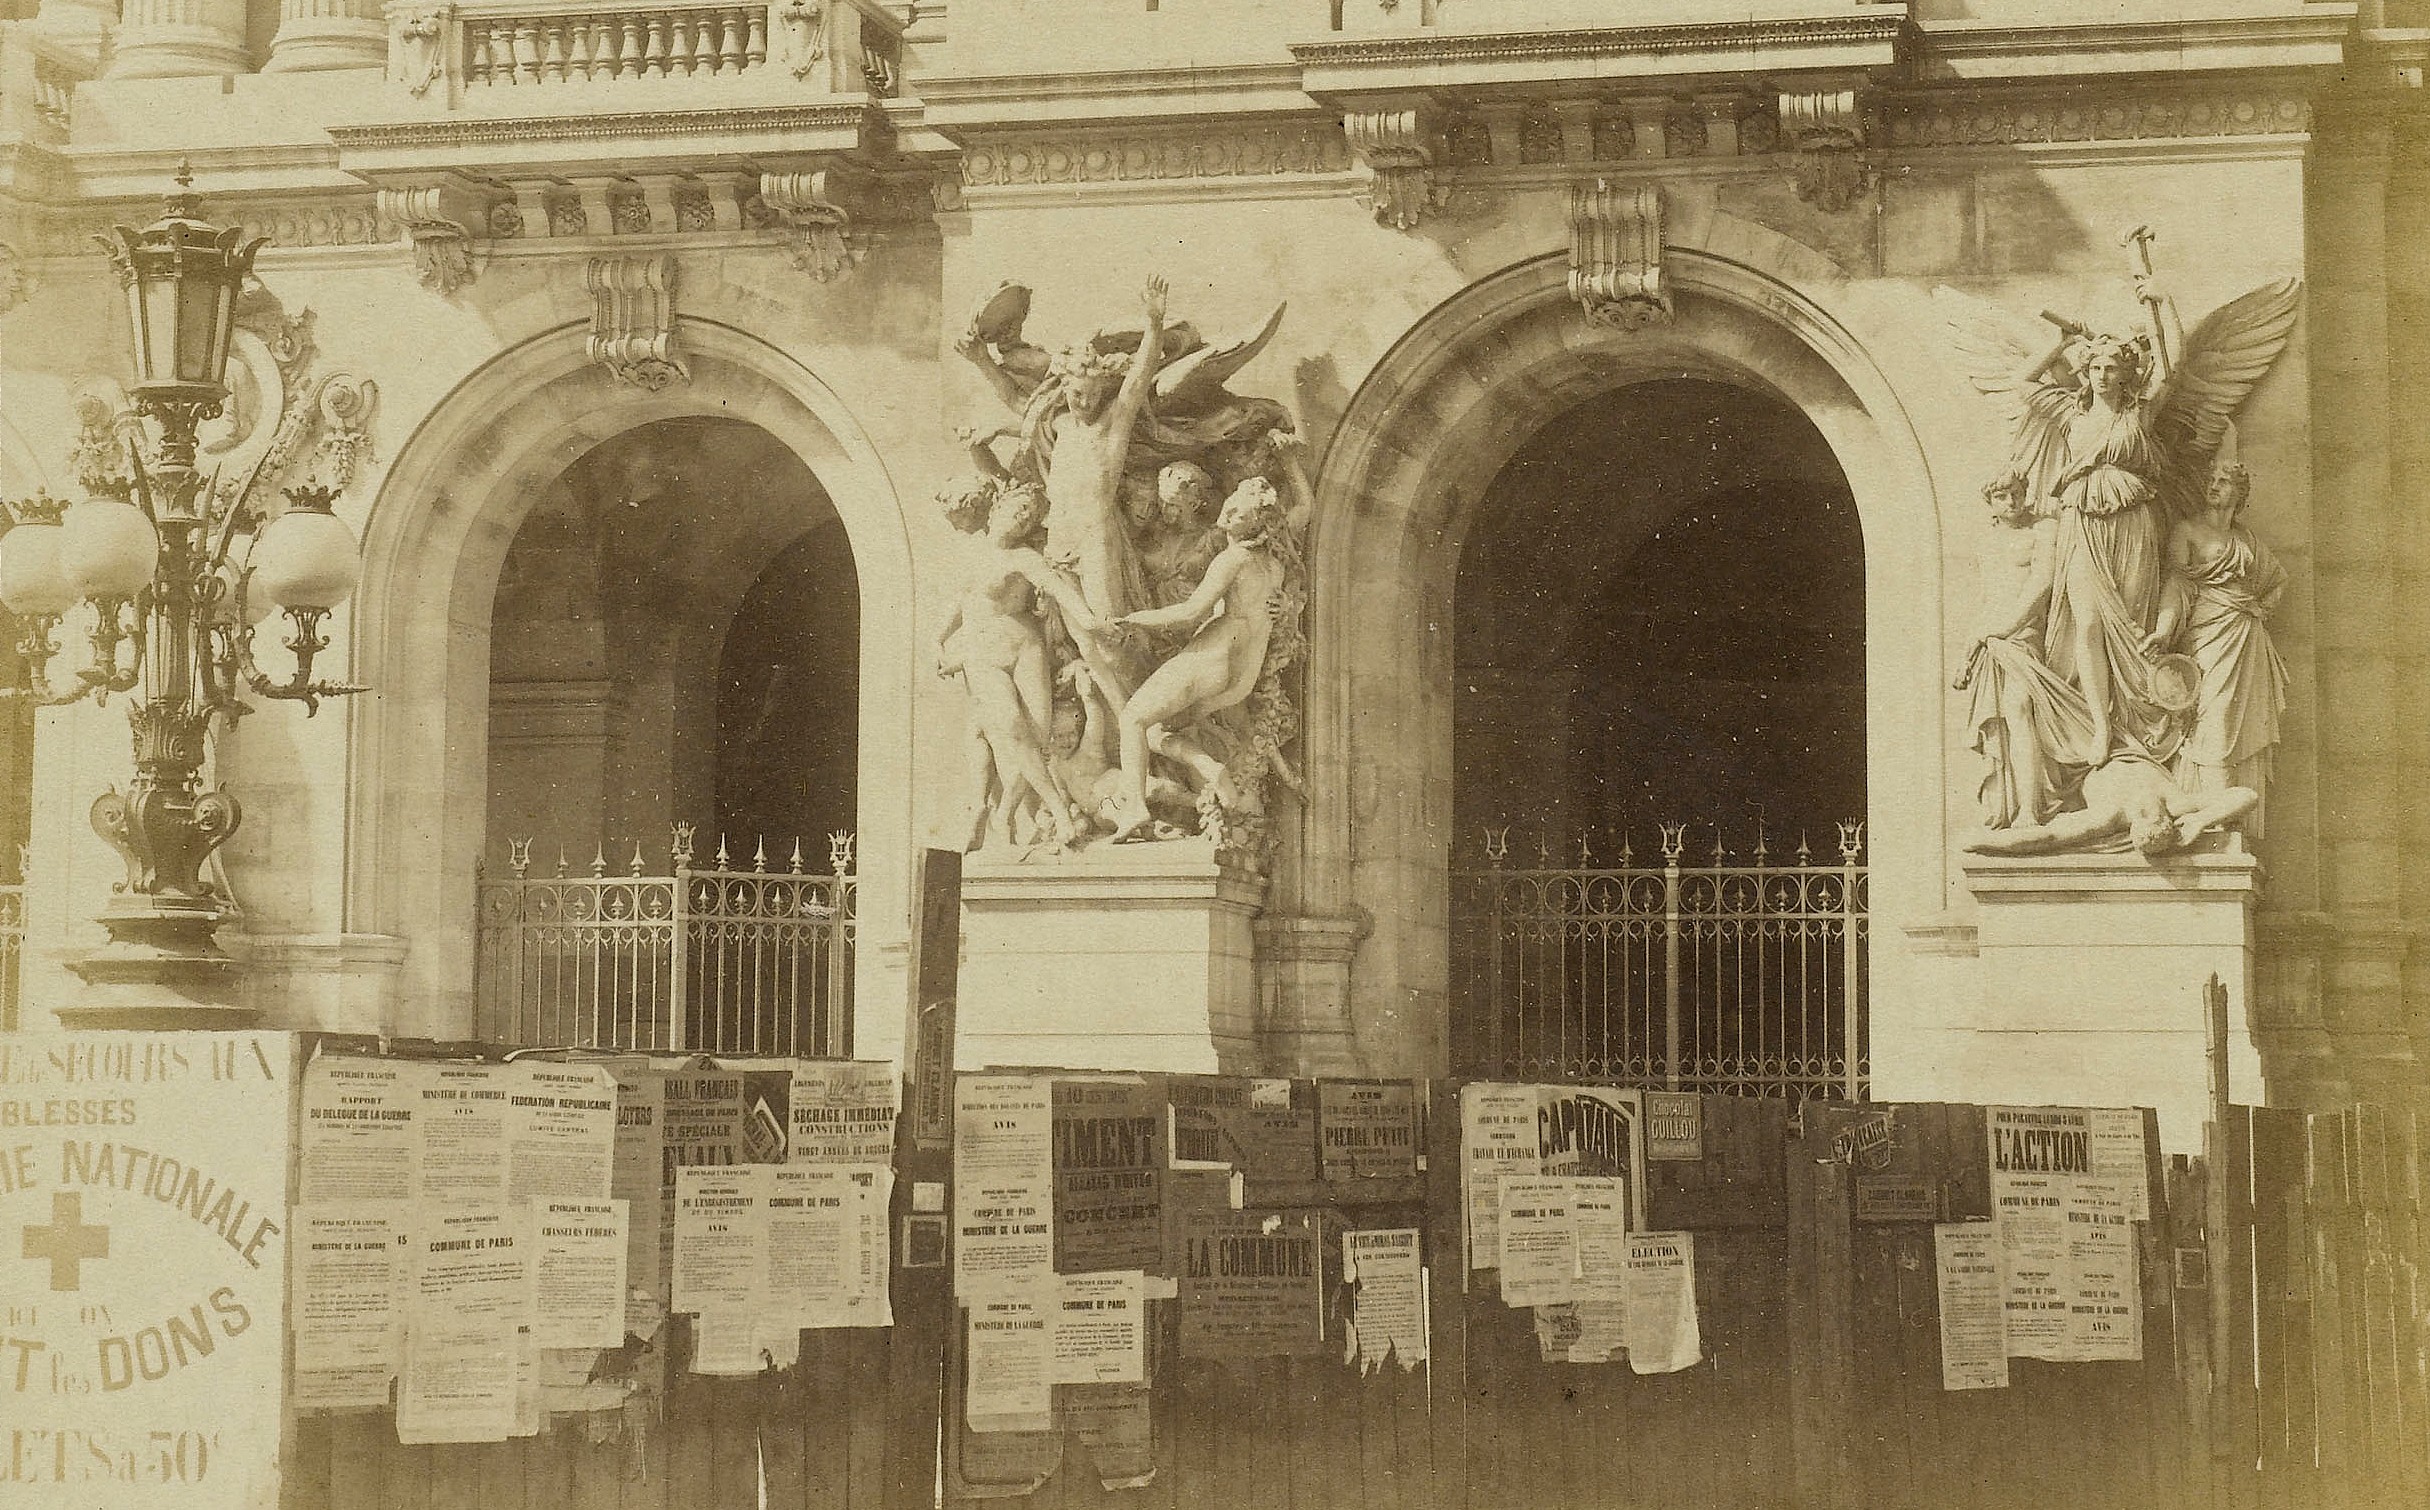 L'Opéra Garnier en construction, palissade avec affiches de la Commune - Détail de la photo de Braquehais (CC0 Paris Musées / Musée Carnavalet - Histoire de Paris)